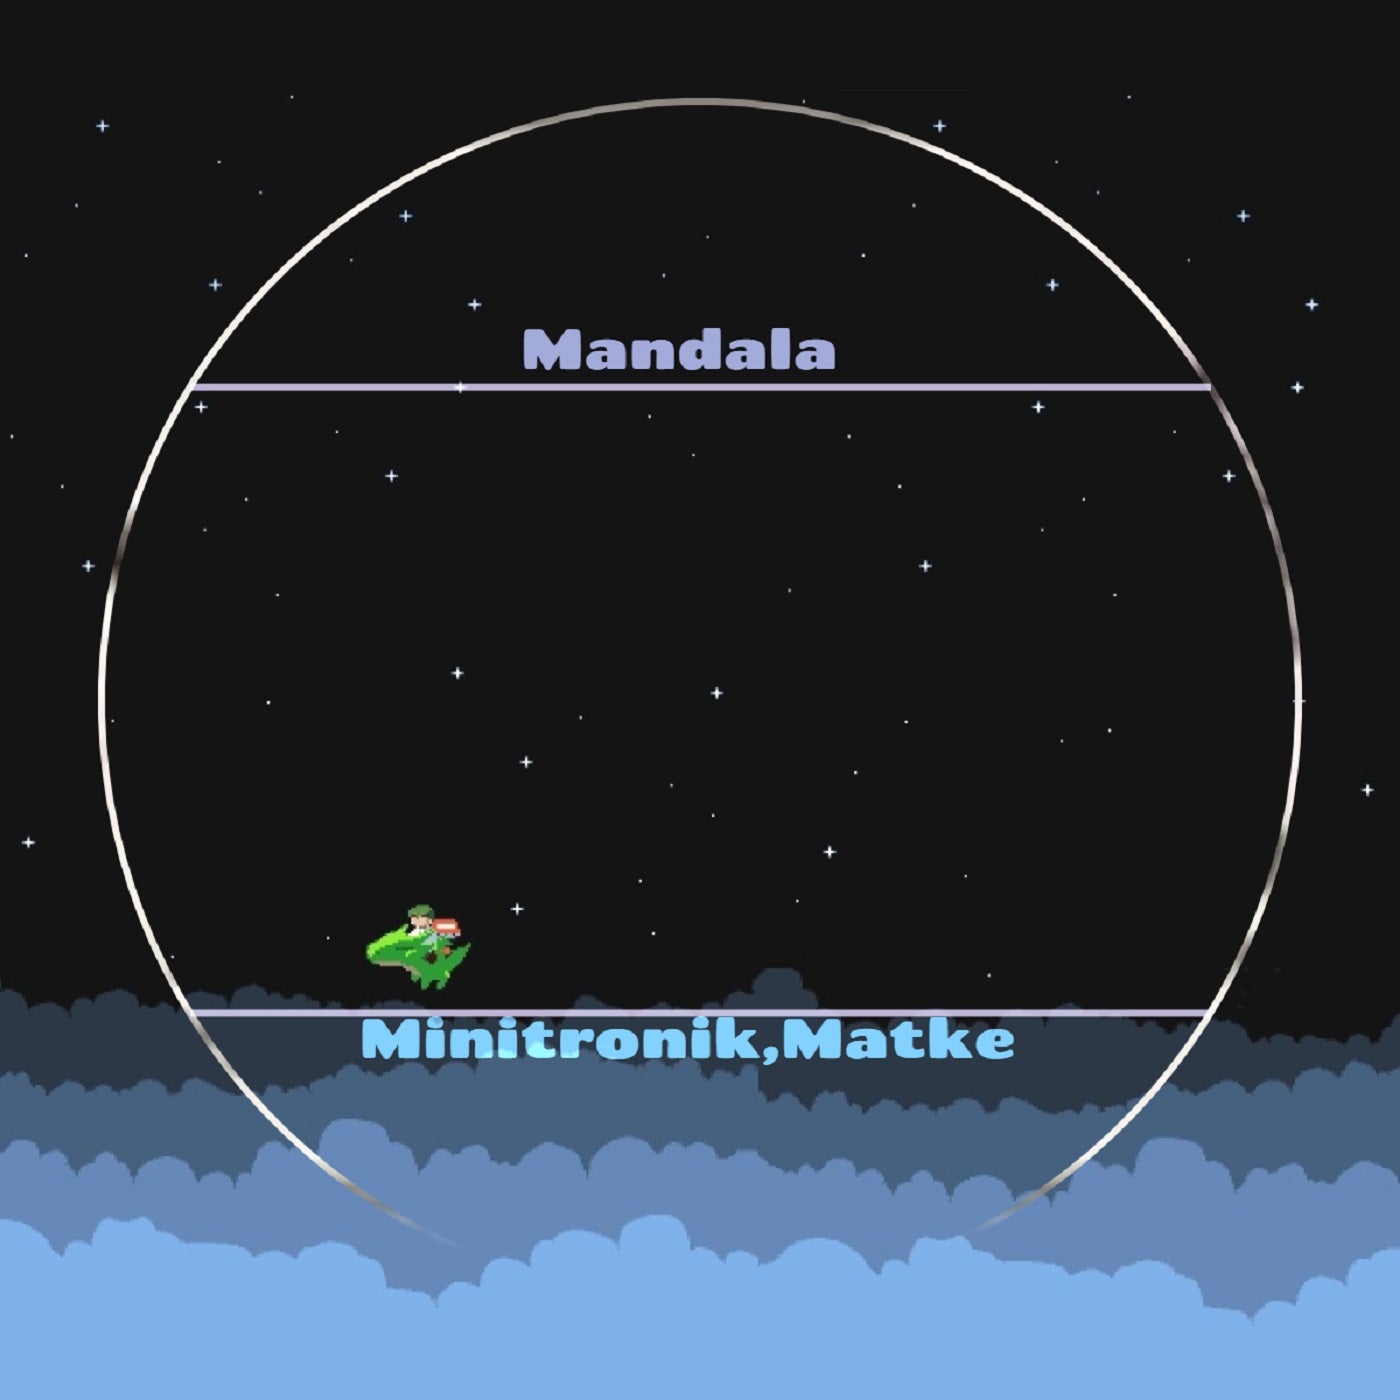 Minitronik, Matke - Mandala (Original Mix)